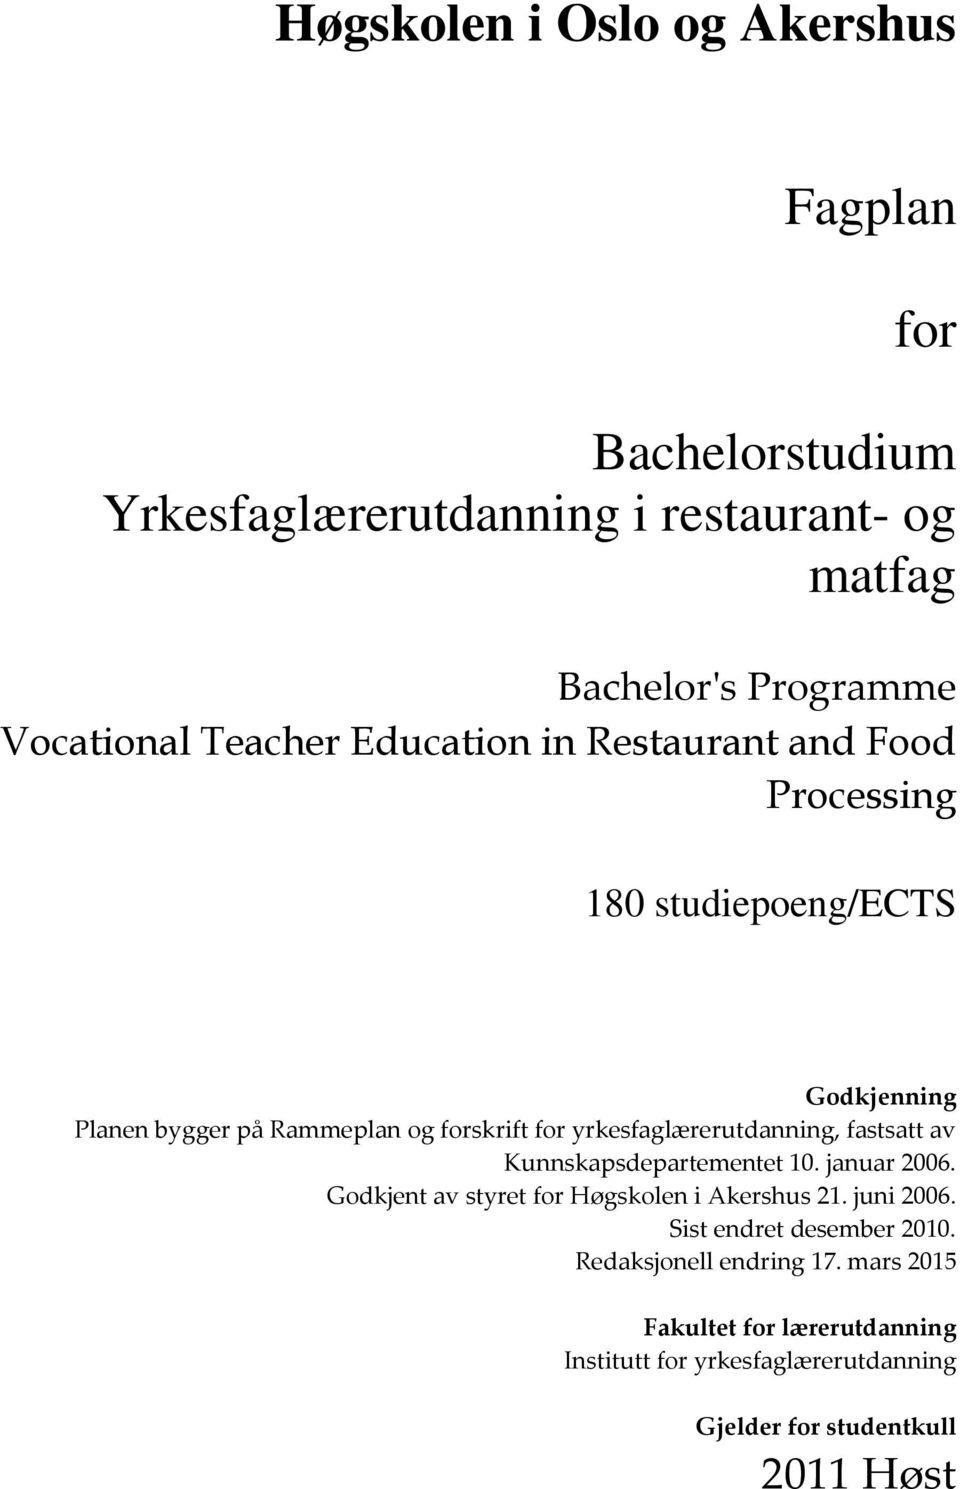 yrkesfaglærerutdanning, fastsatt av Kunnskapsdepartementet 10. januar 2006. Godkjent av styret for Høgskolen i Akershus 21. juni 2006.